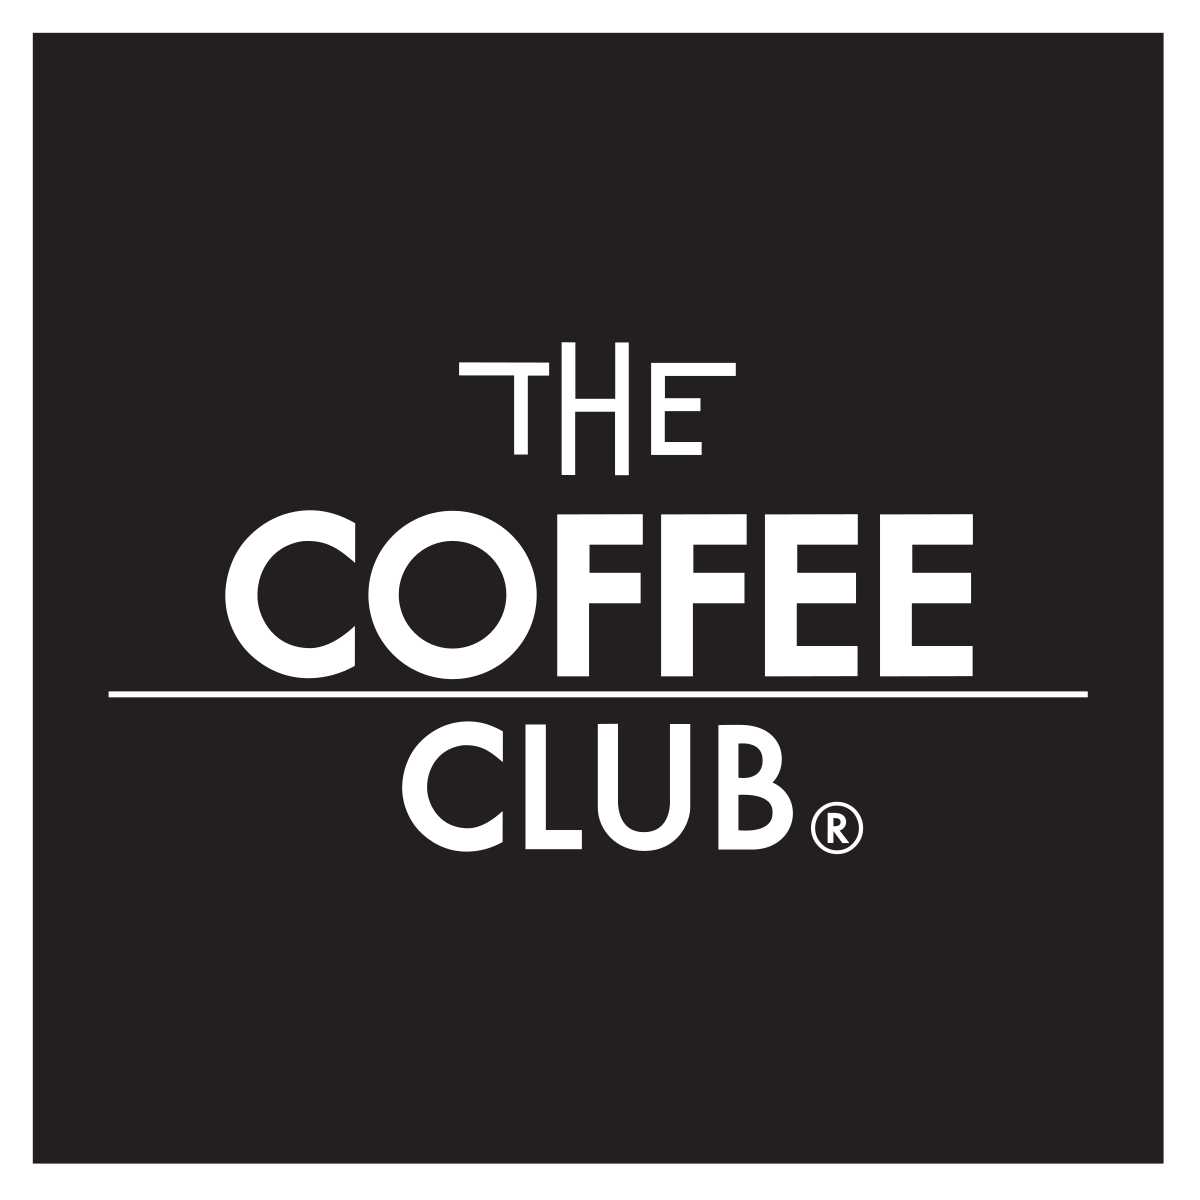 The Coffee Club - Wikipedia